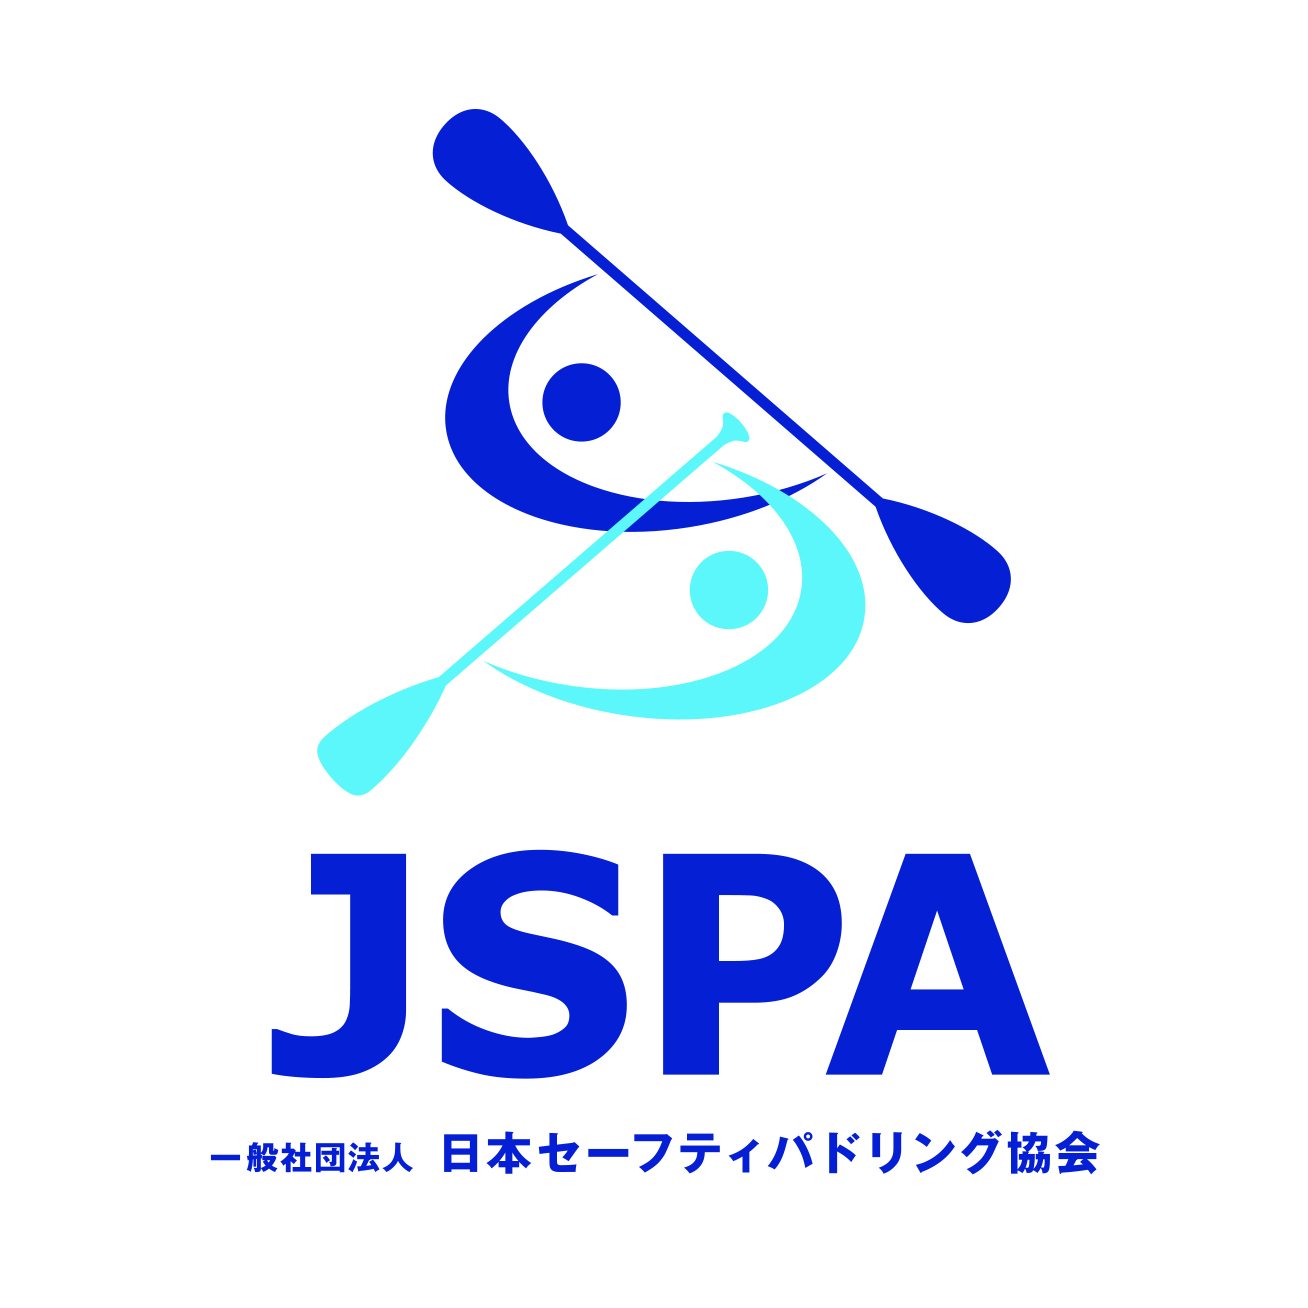 一般社団法人 日本セーフティパドリング協会 JSPA